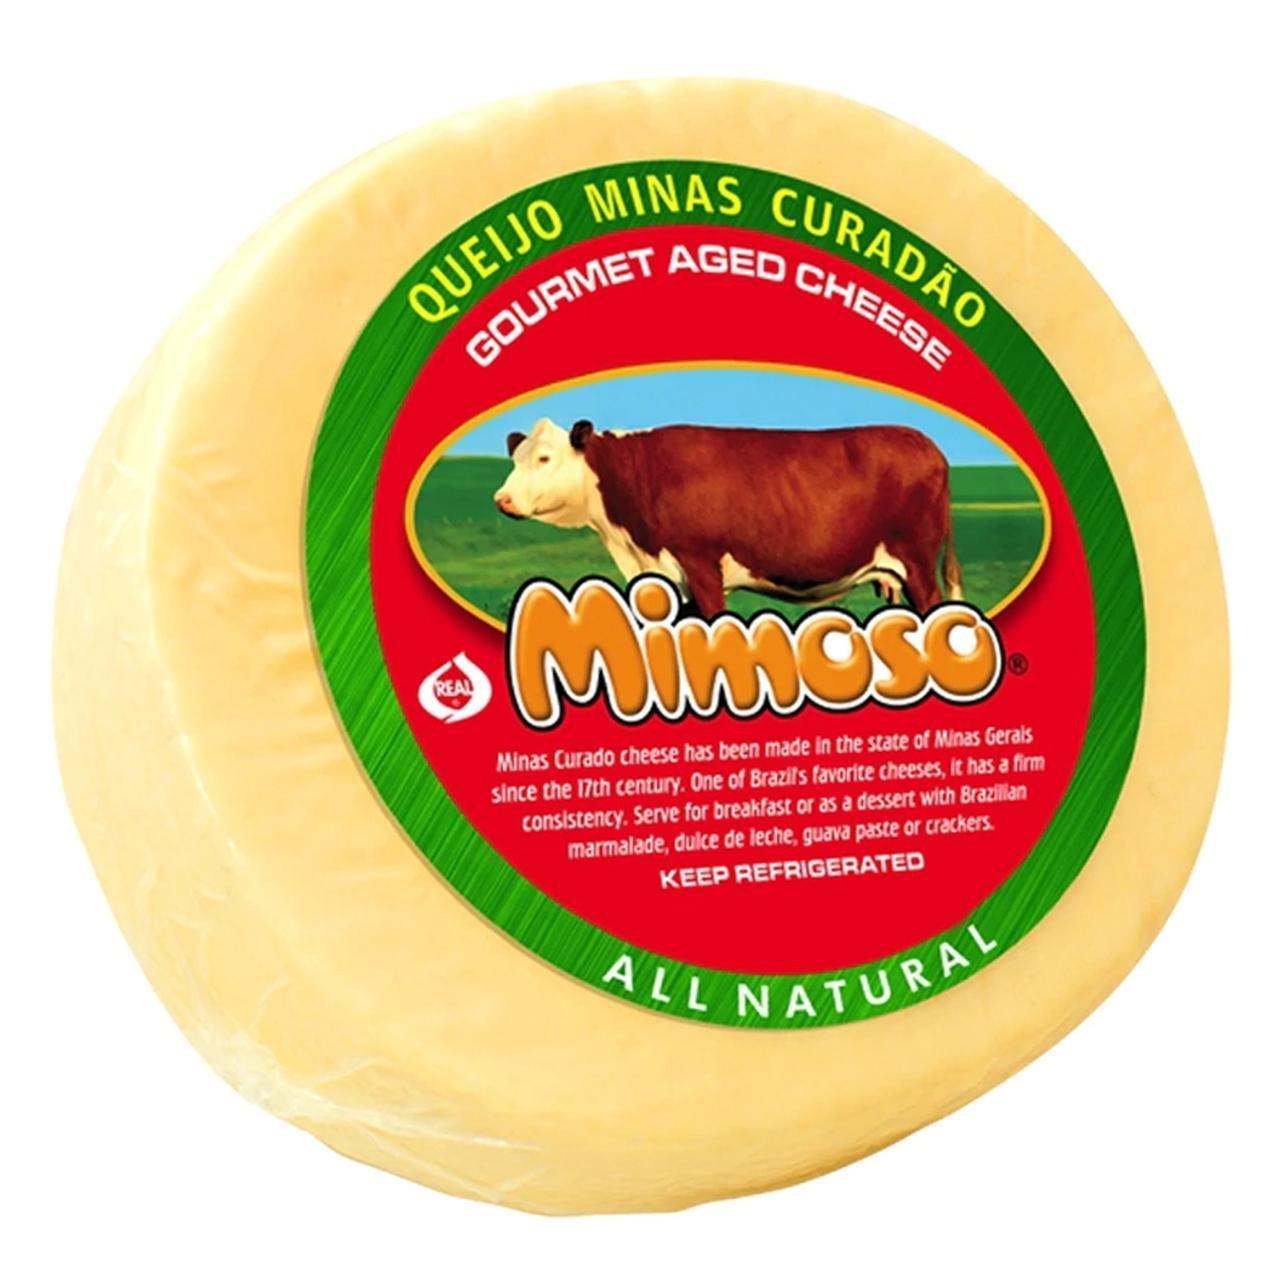 Queijo Minas Curadinho (Aged Cheese) 14oz Mimoso - BR Emporio